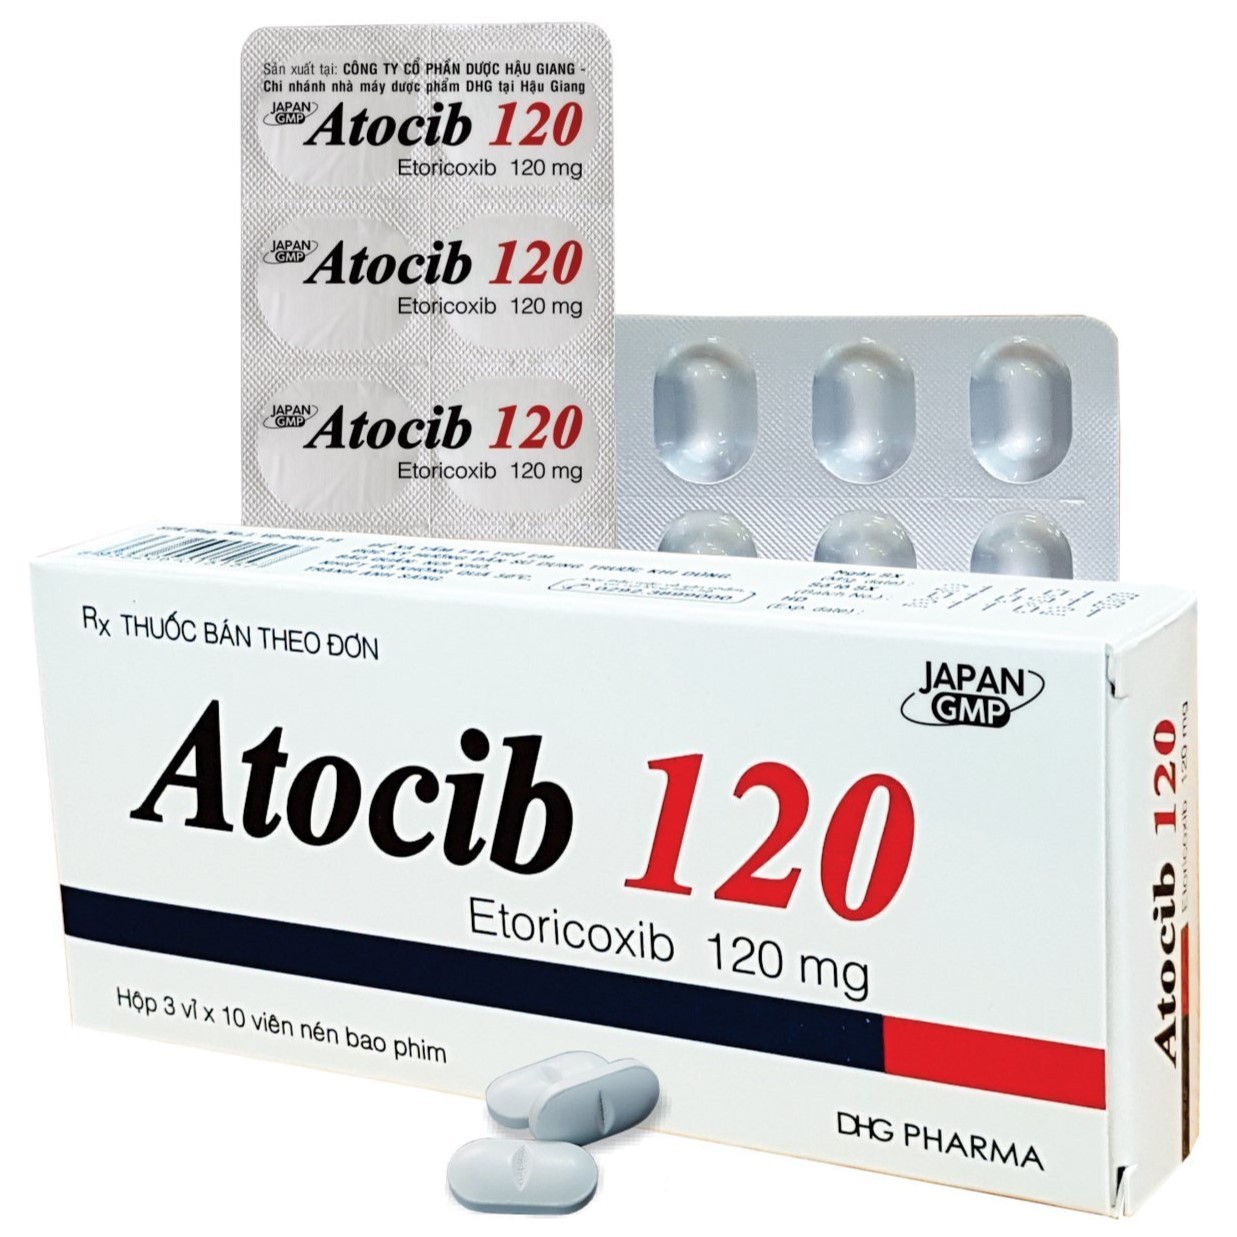 Thuốc bán theo đơn Atocib 120 có thành phần etoricoxib với hàm lượng 120 mg